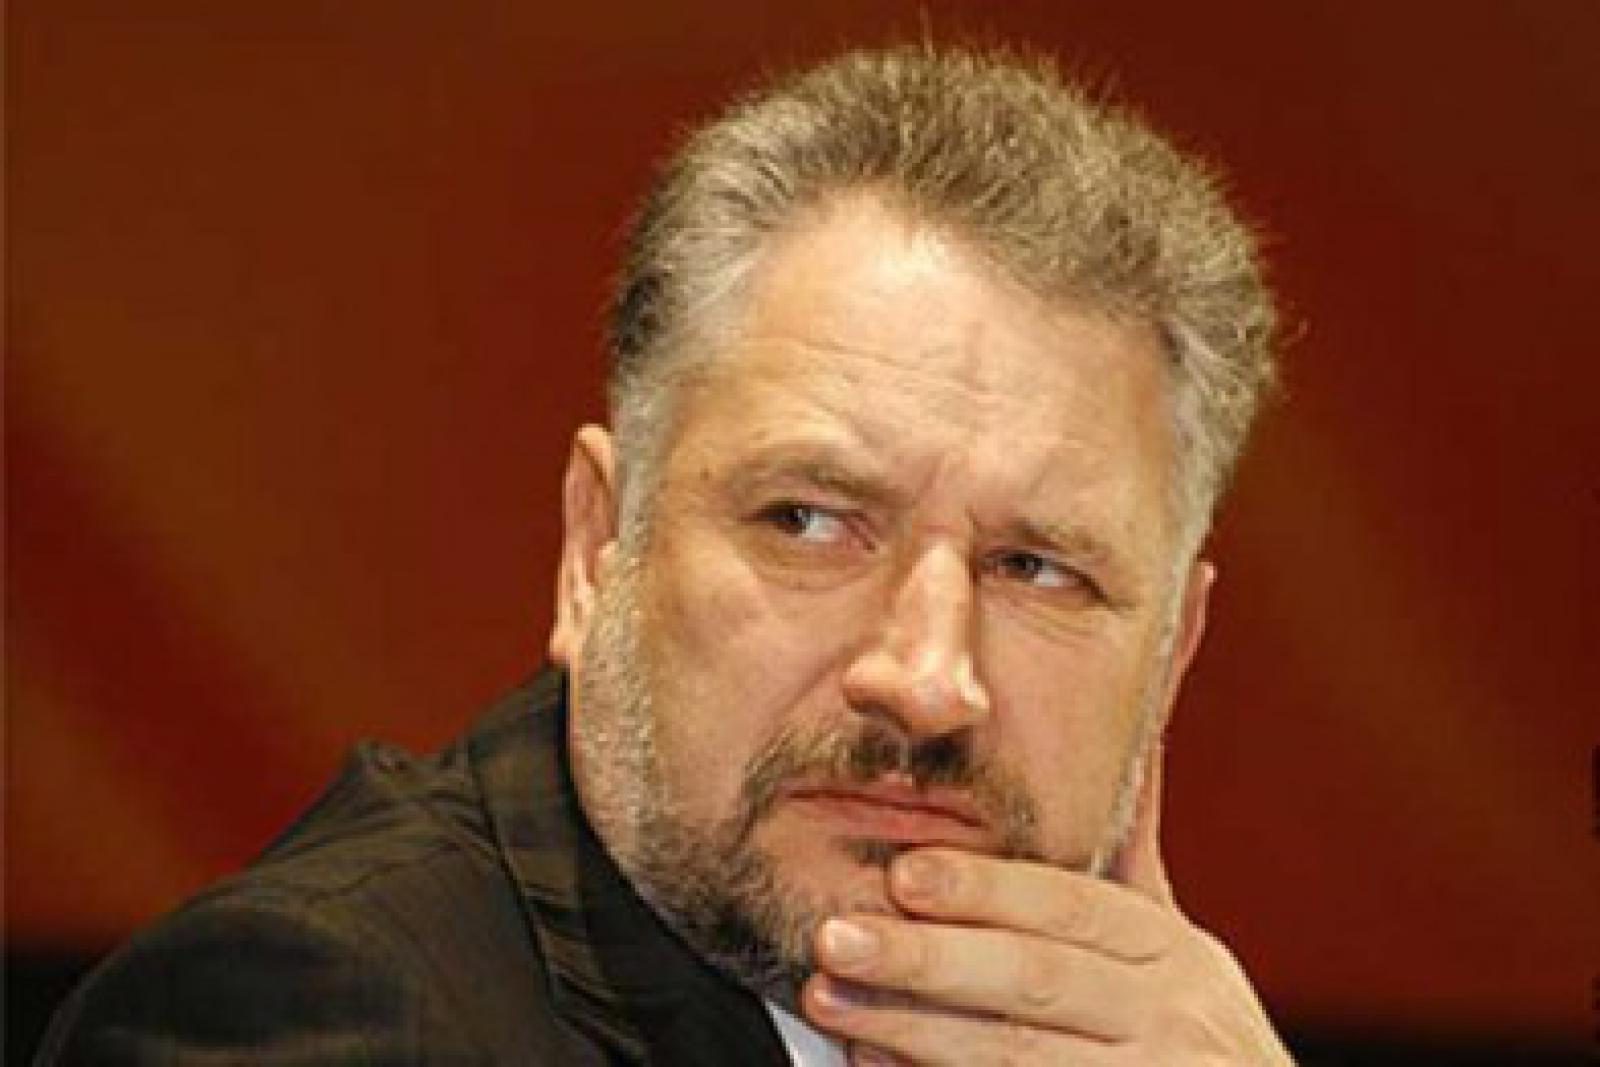 Честь имею!: Заместитель Жебривского Евгения Гогитидзе подала в отставку после скандала в СМИ